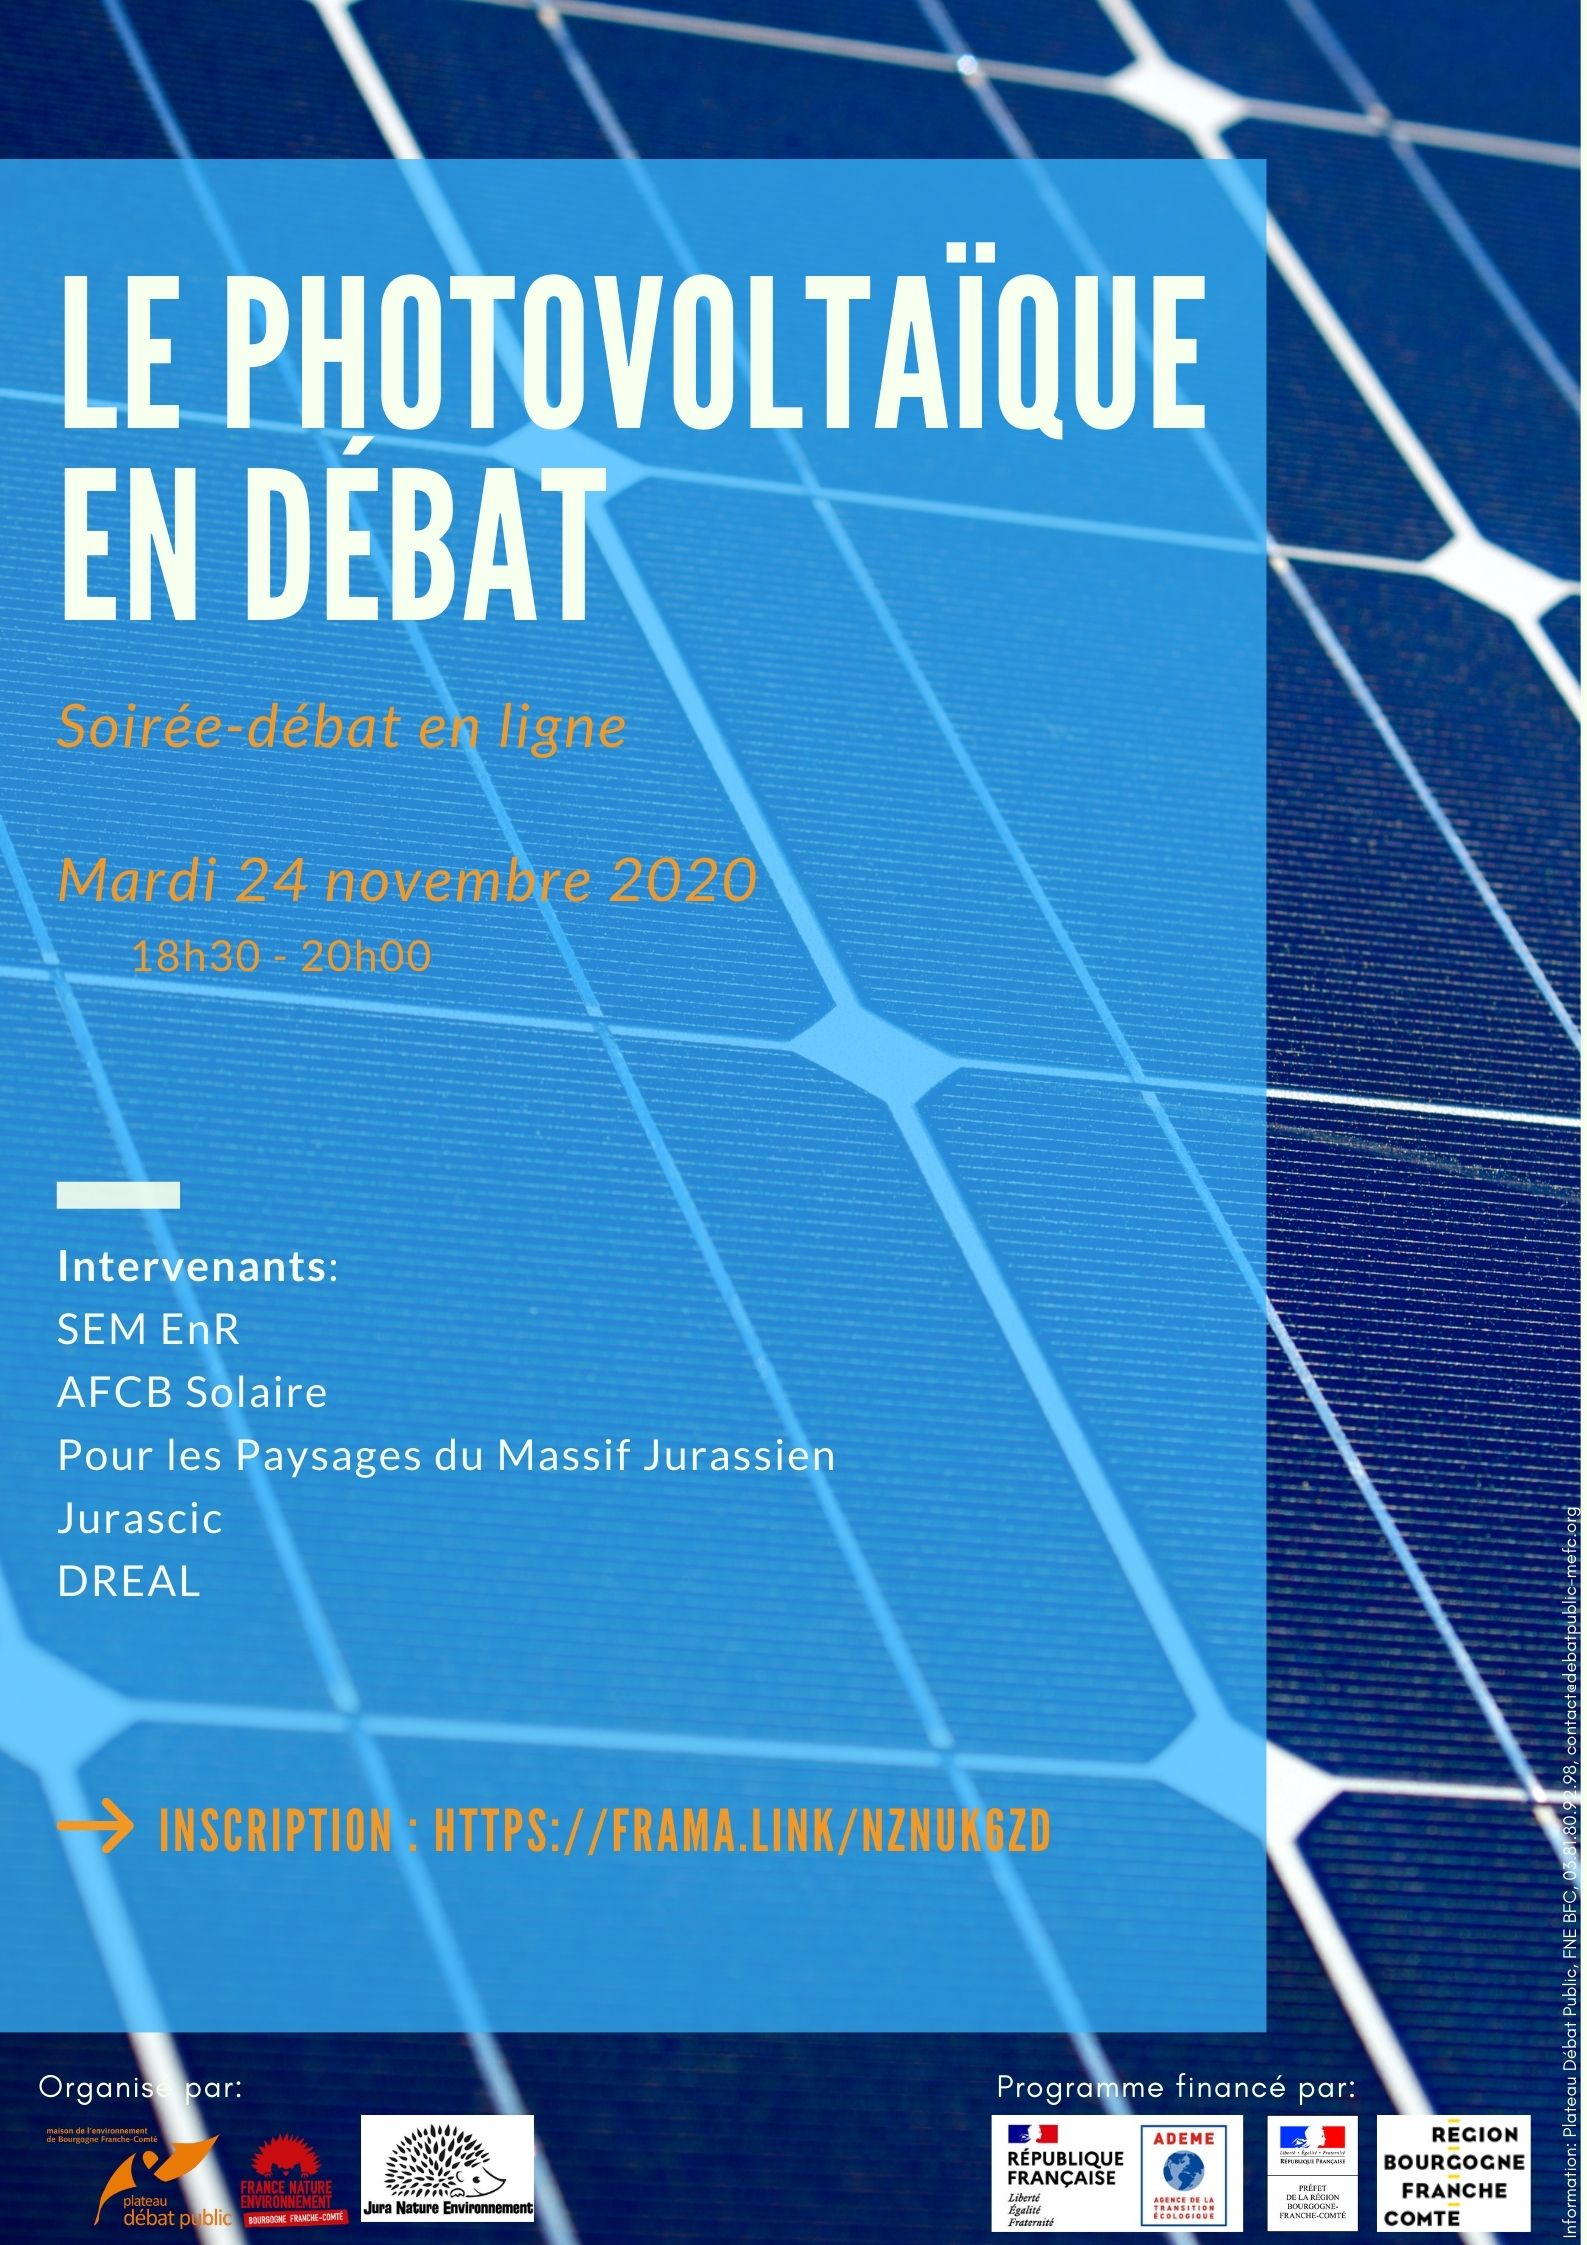 Le photovoltaïque en débat – débat en ligne le mardi 24 novembre